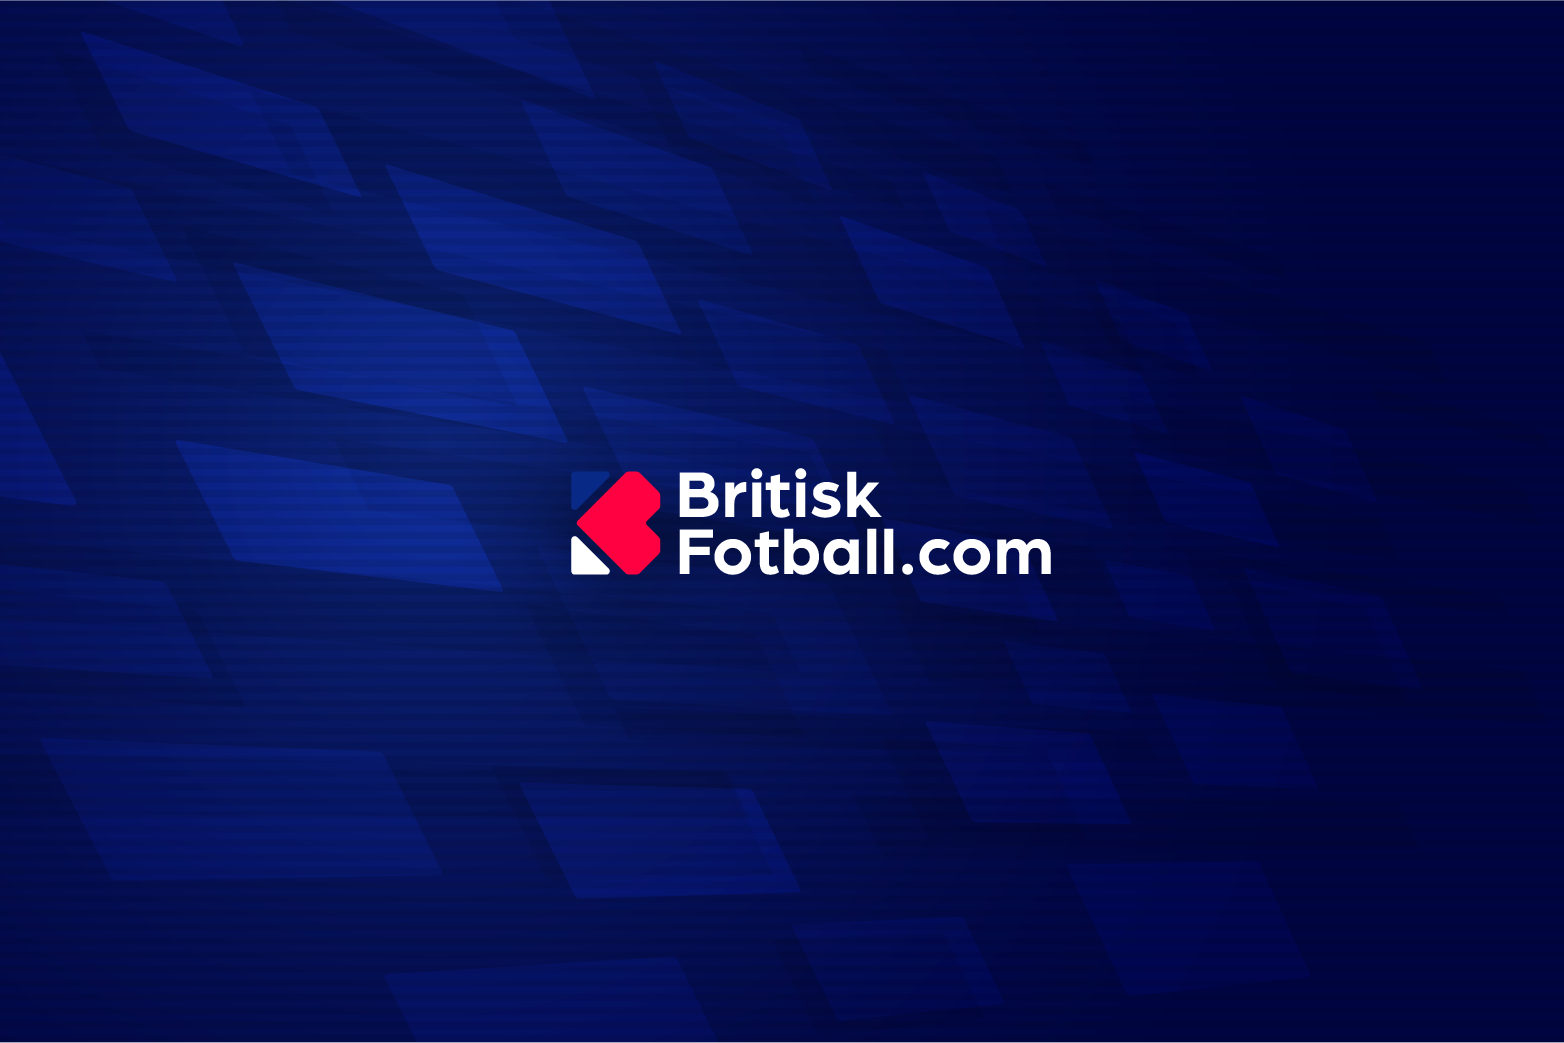 Britiskfotball.com, Britiskfotball